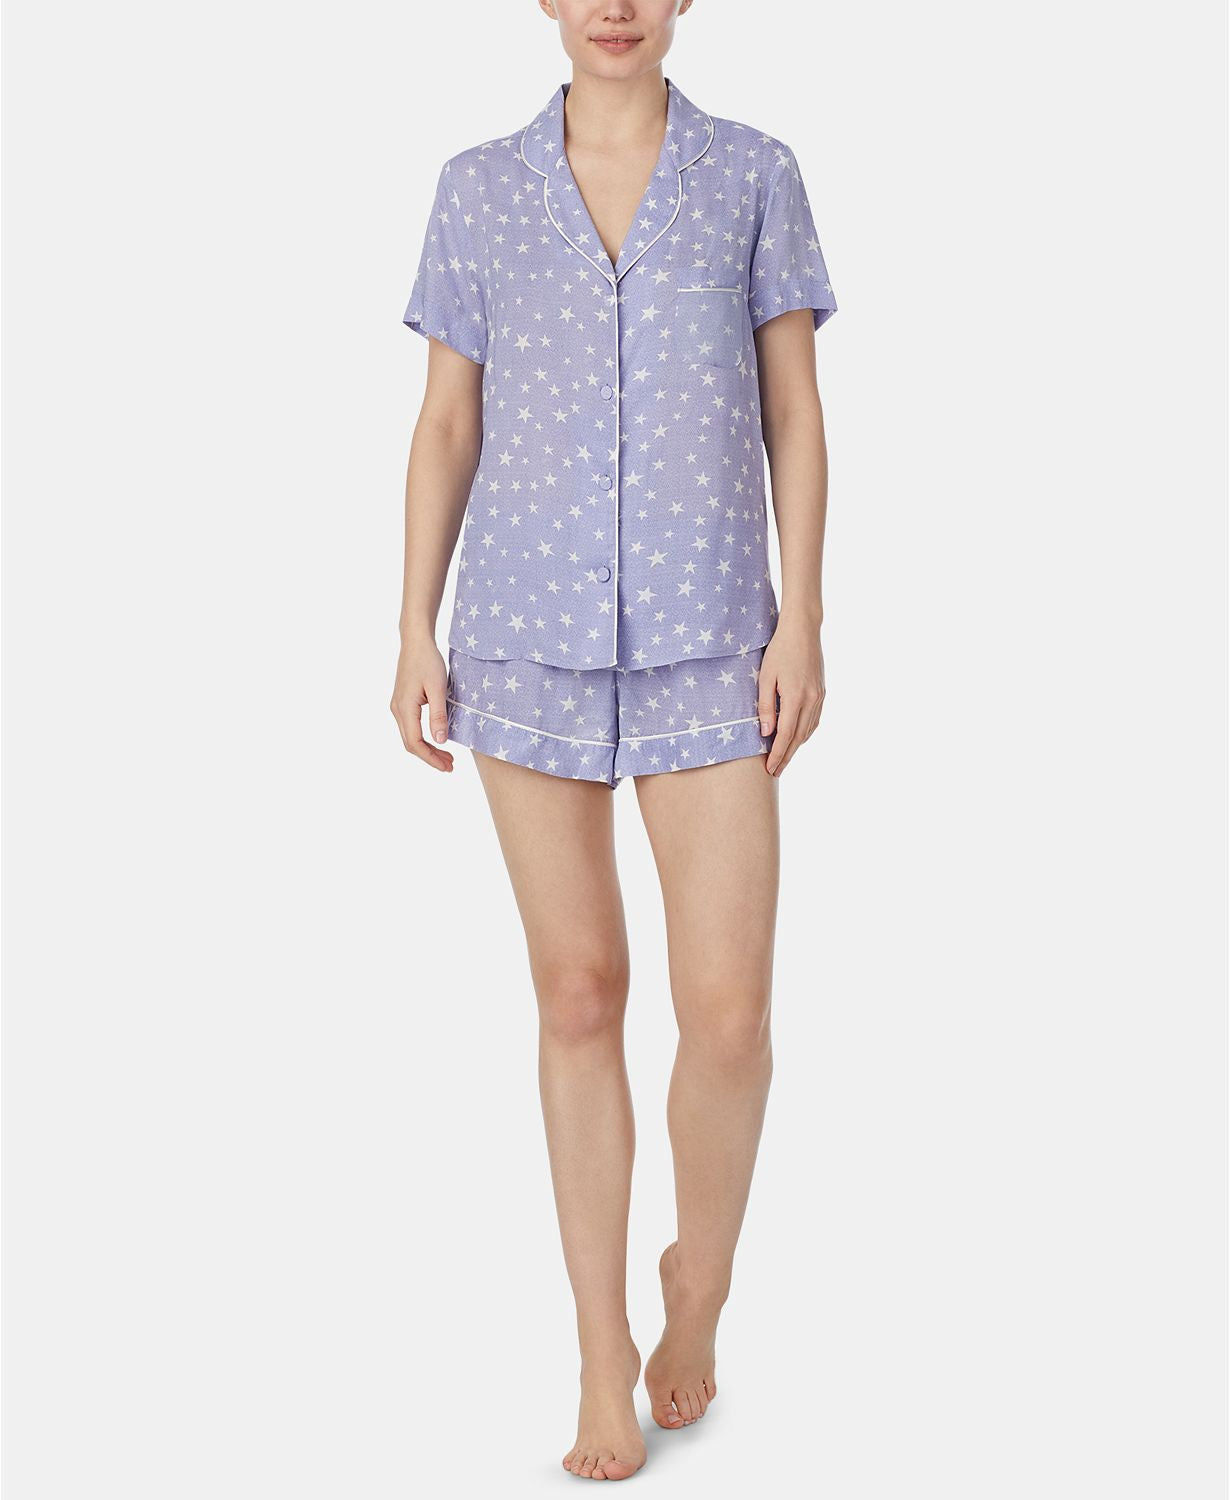 Betsey Johnson Notch Collar Top And Shorts Star Printed Pajama Set